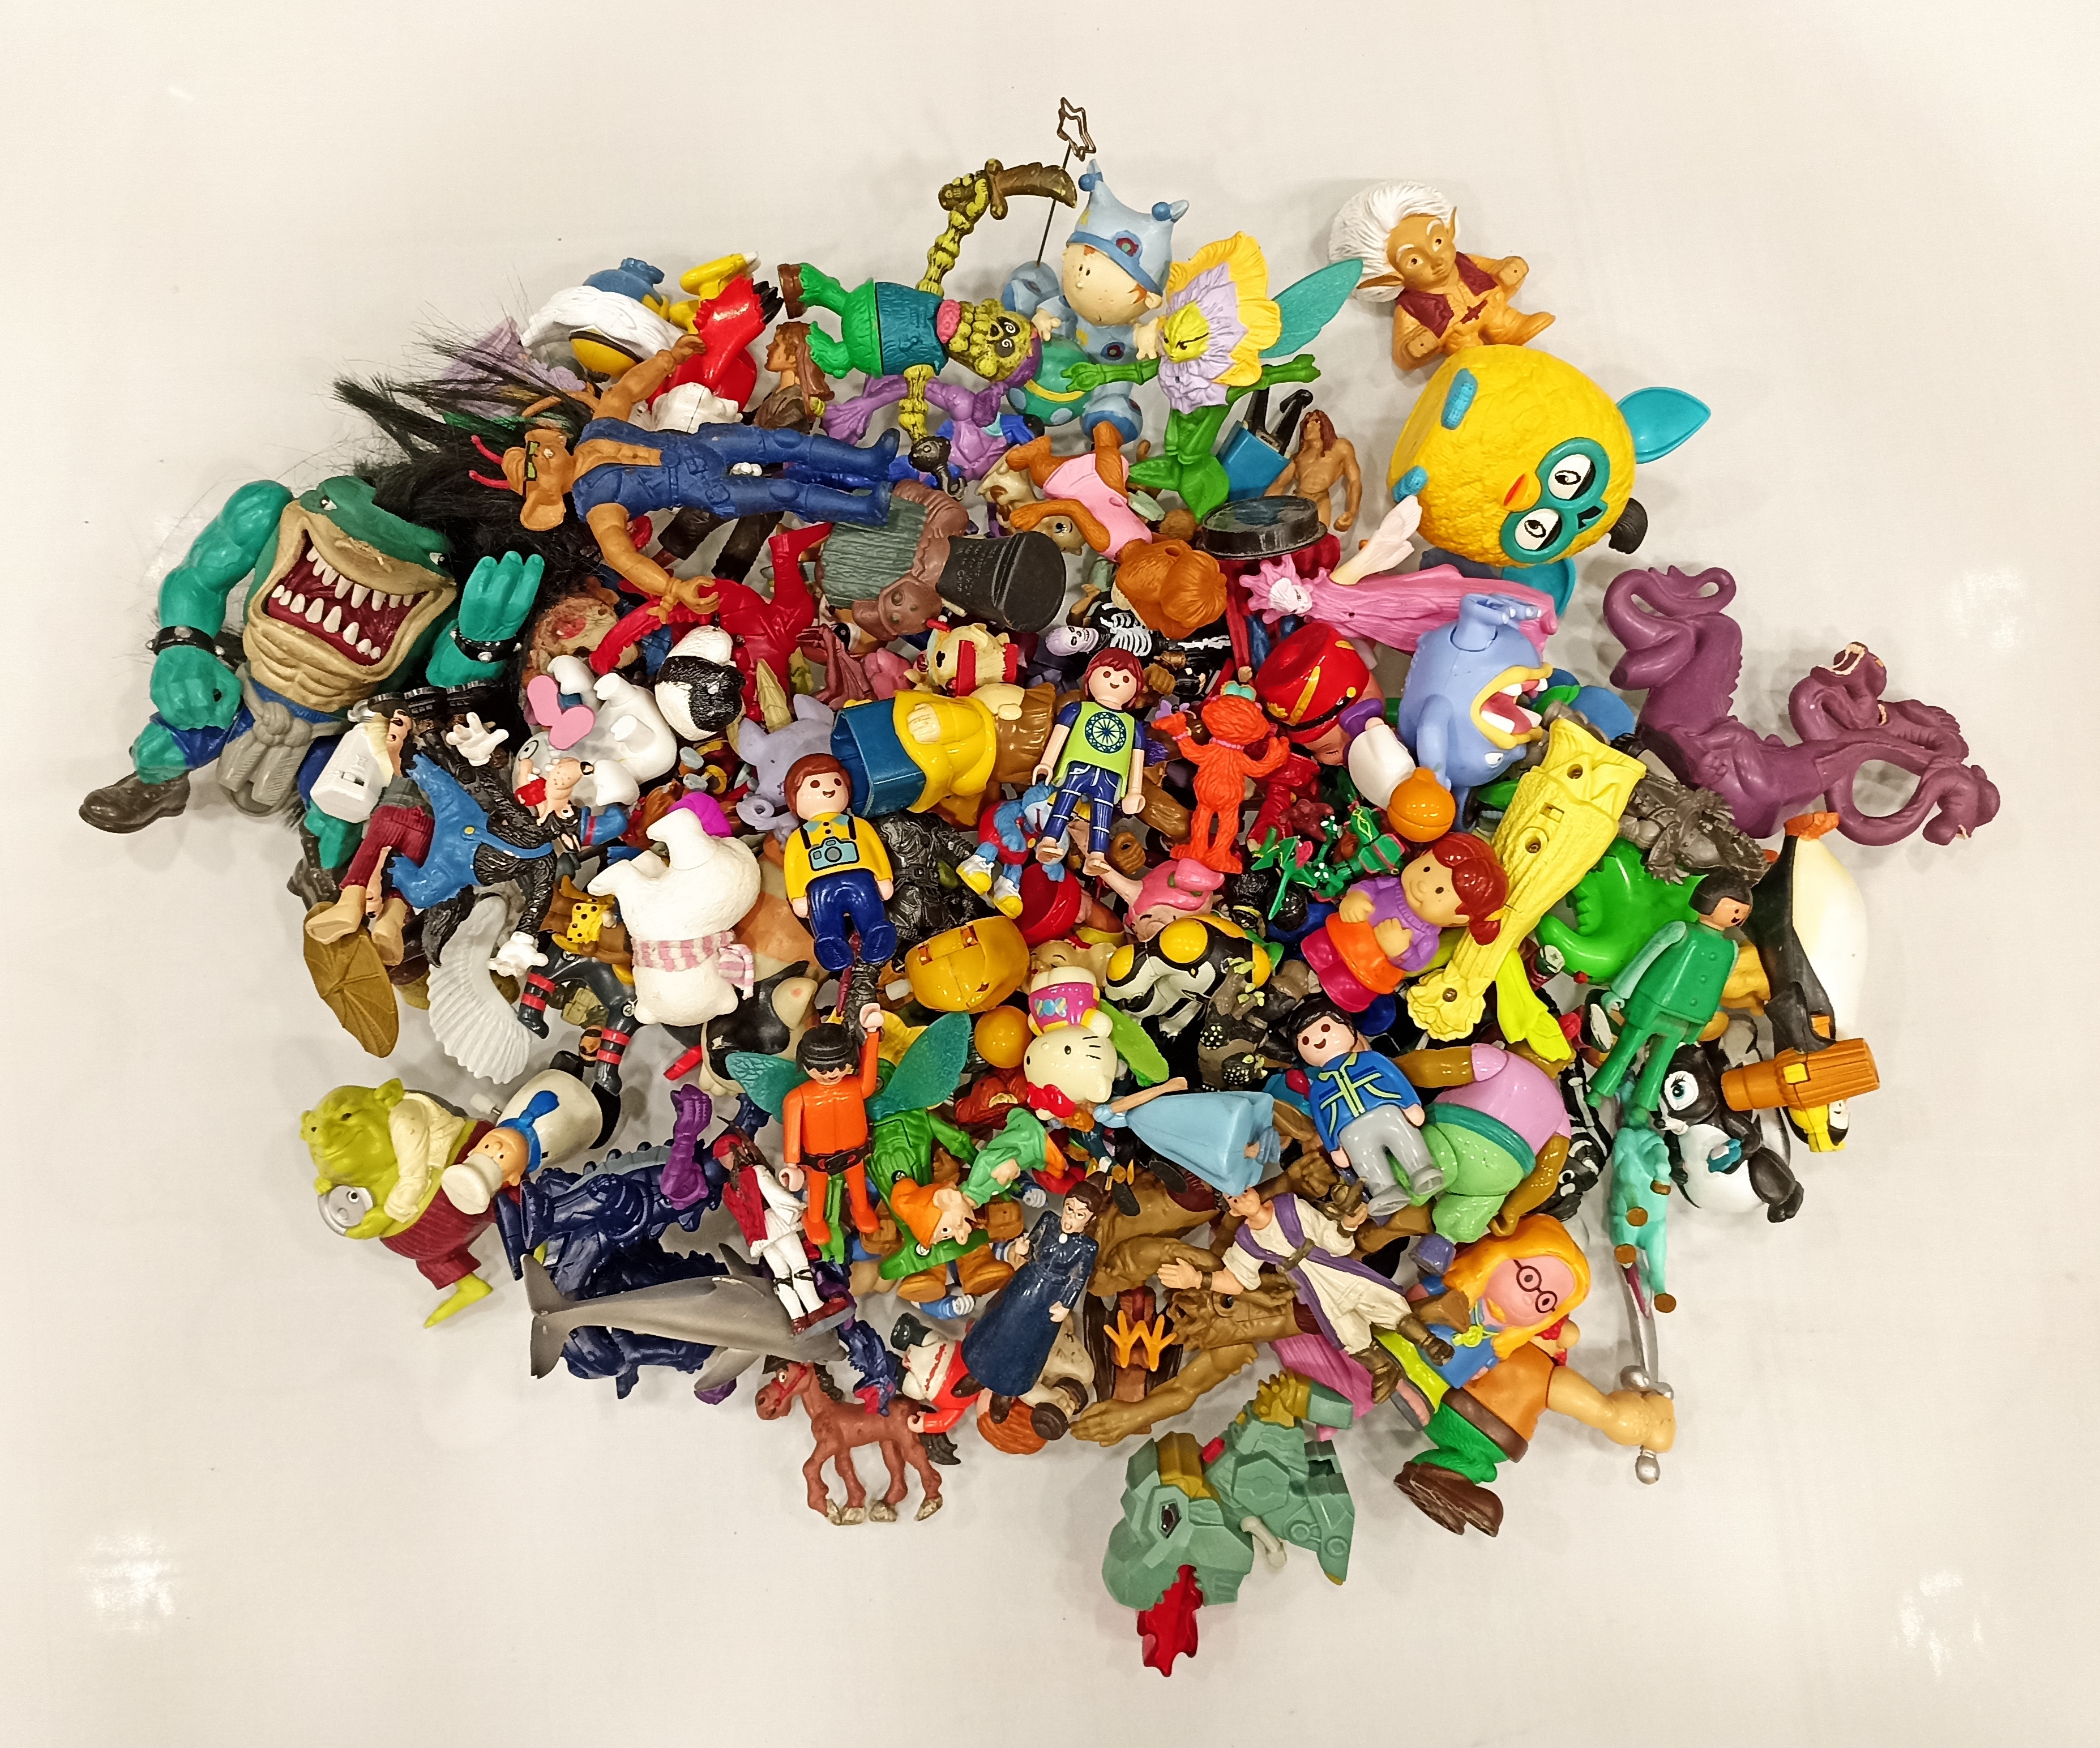 Gran lote de figuritas de plástico (superhéroes, princesas, animales...) Diferentes modelos y marcas